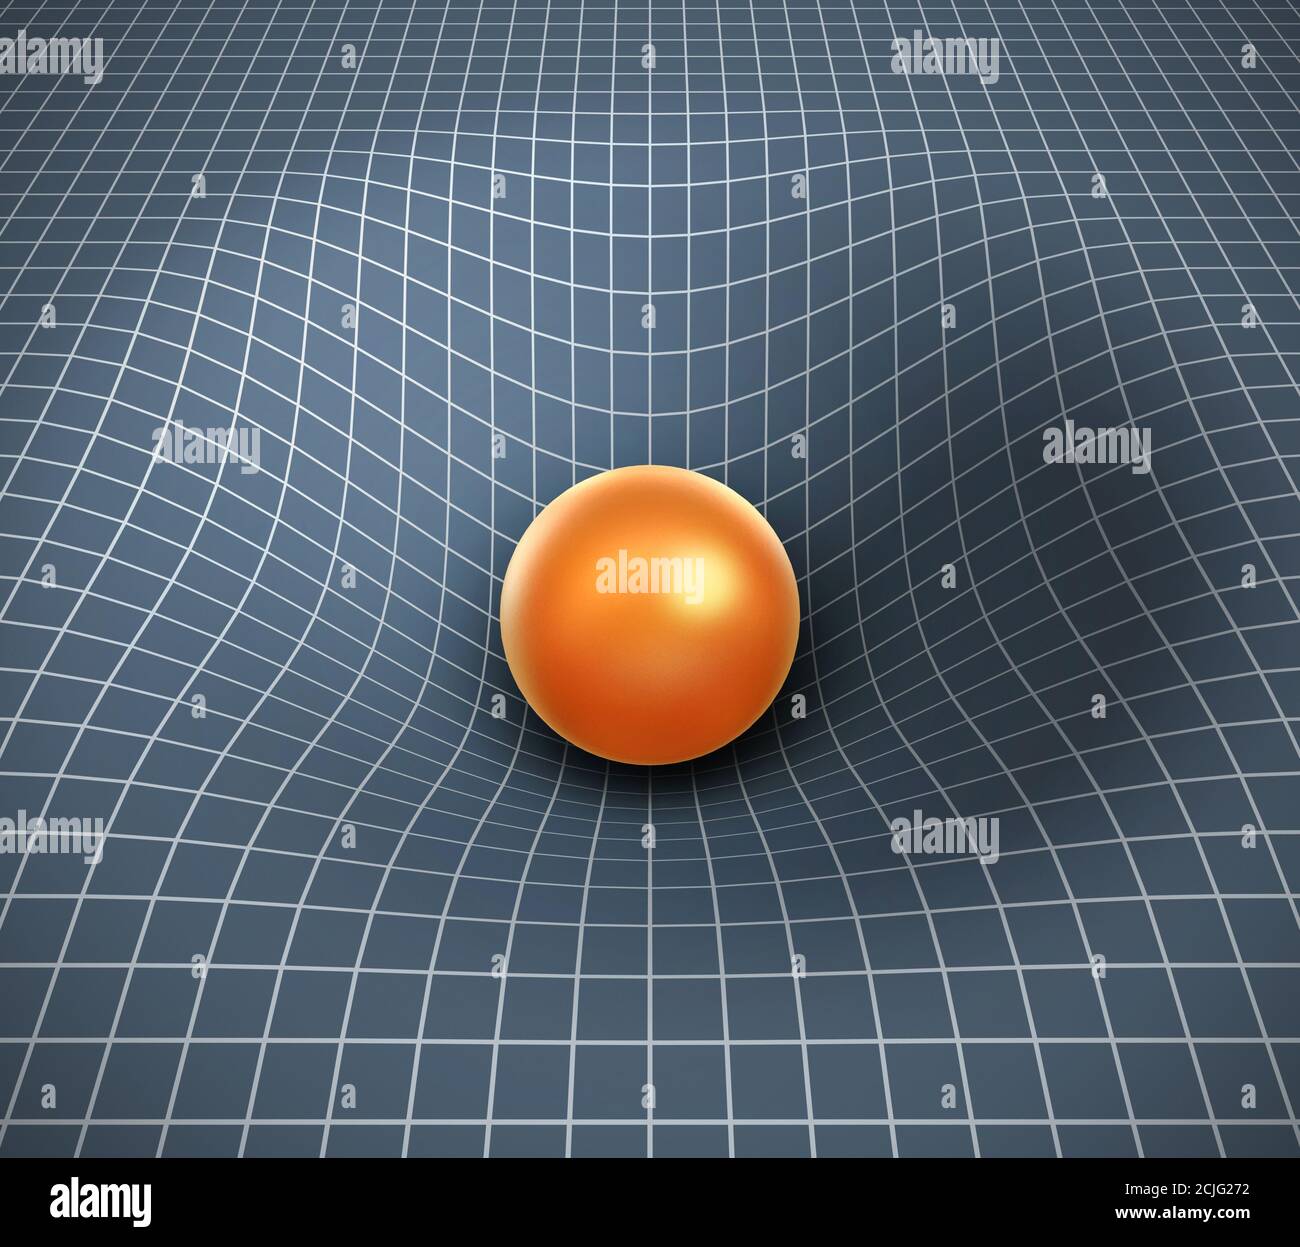 illustrazione 3d della gravità - oggetto che influisce sullo spazio/tempo Foto Stock